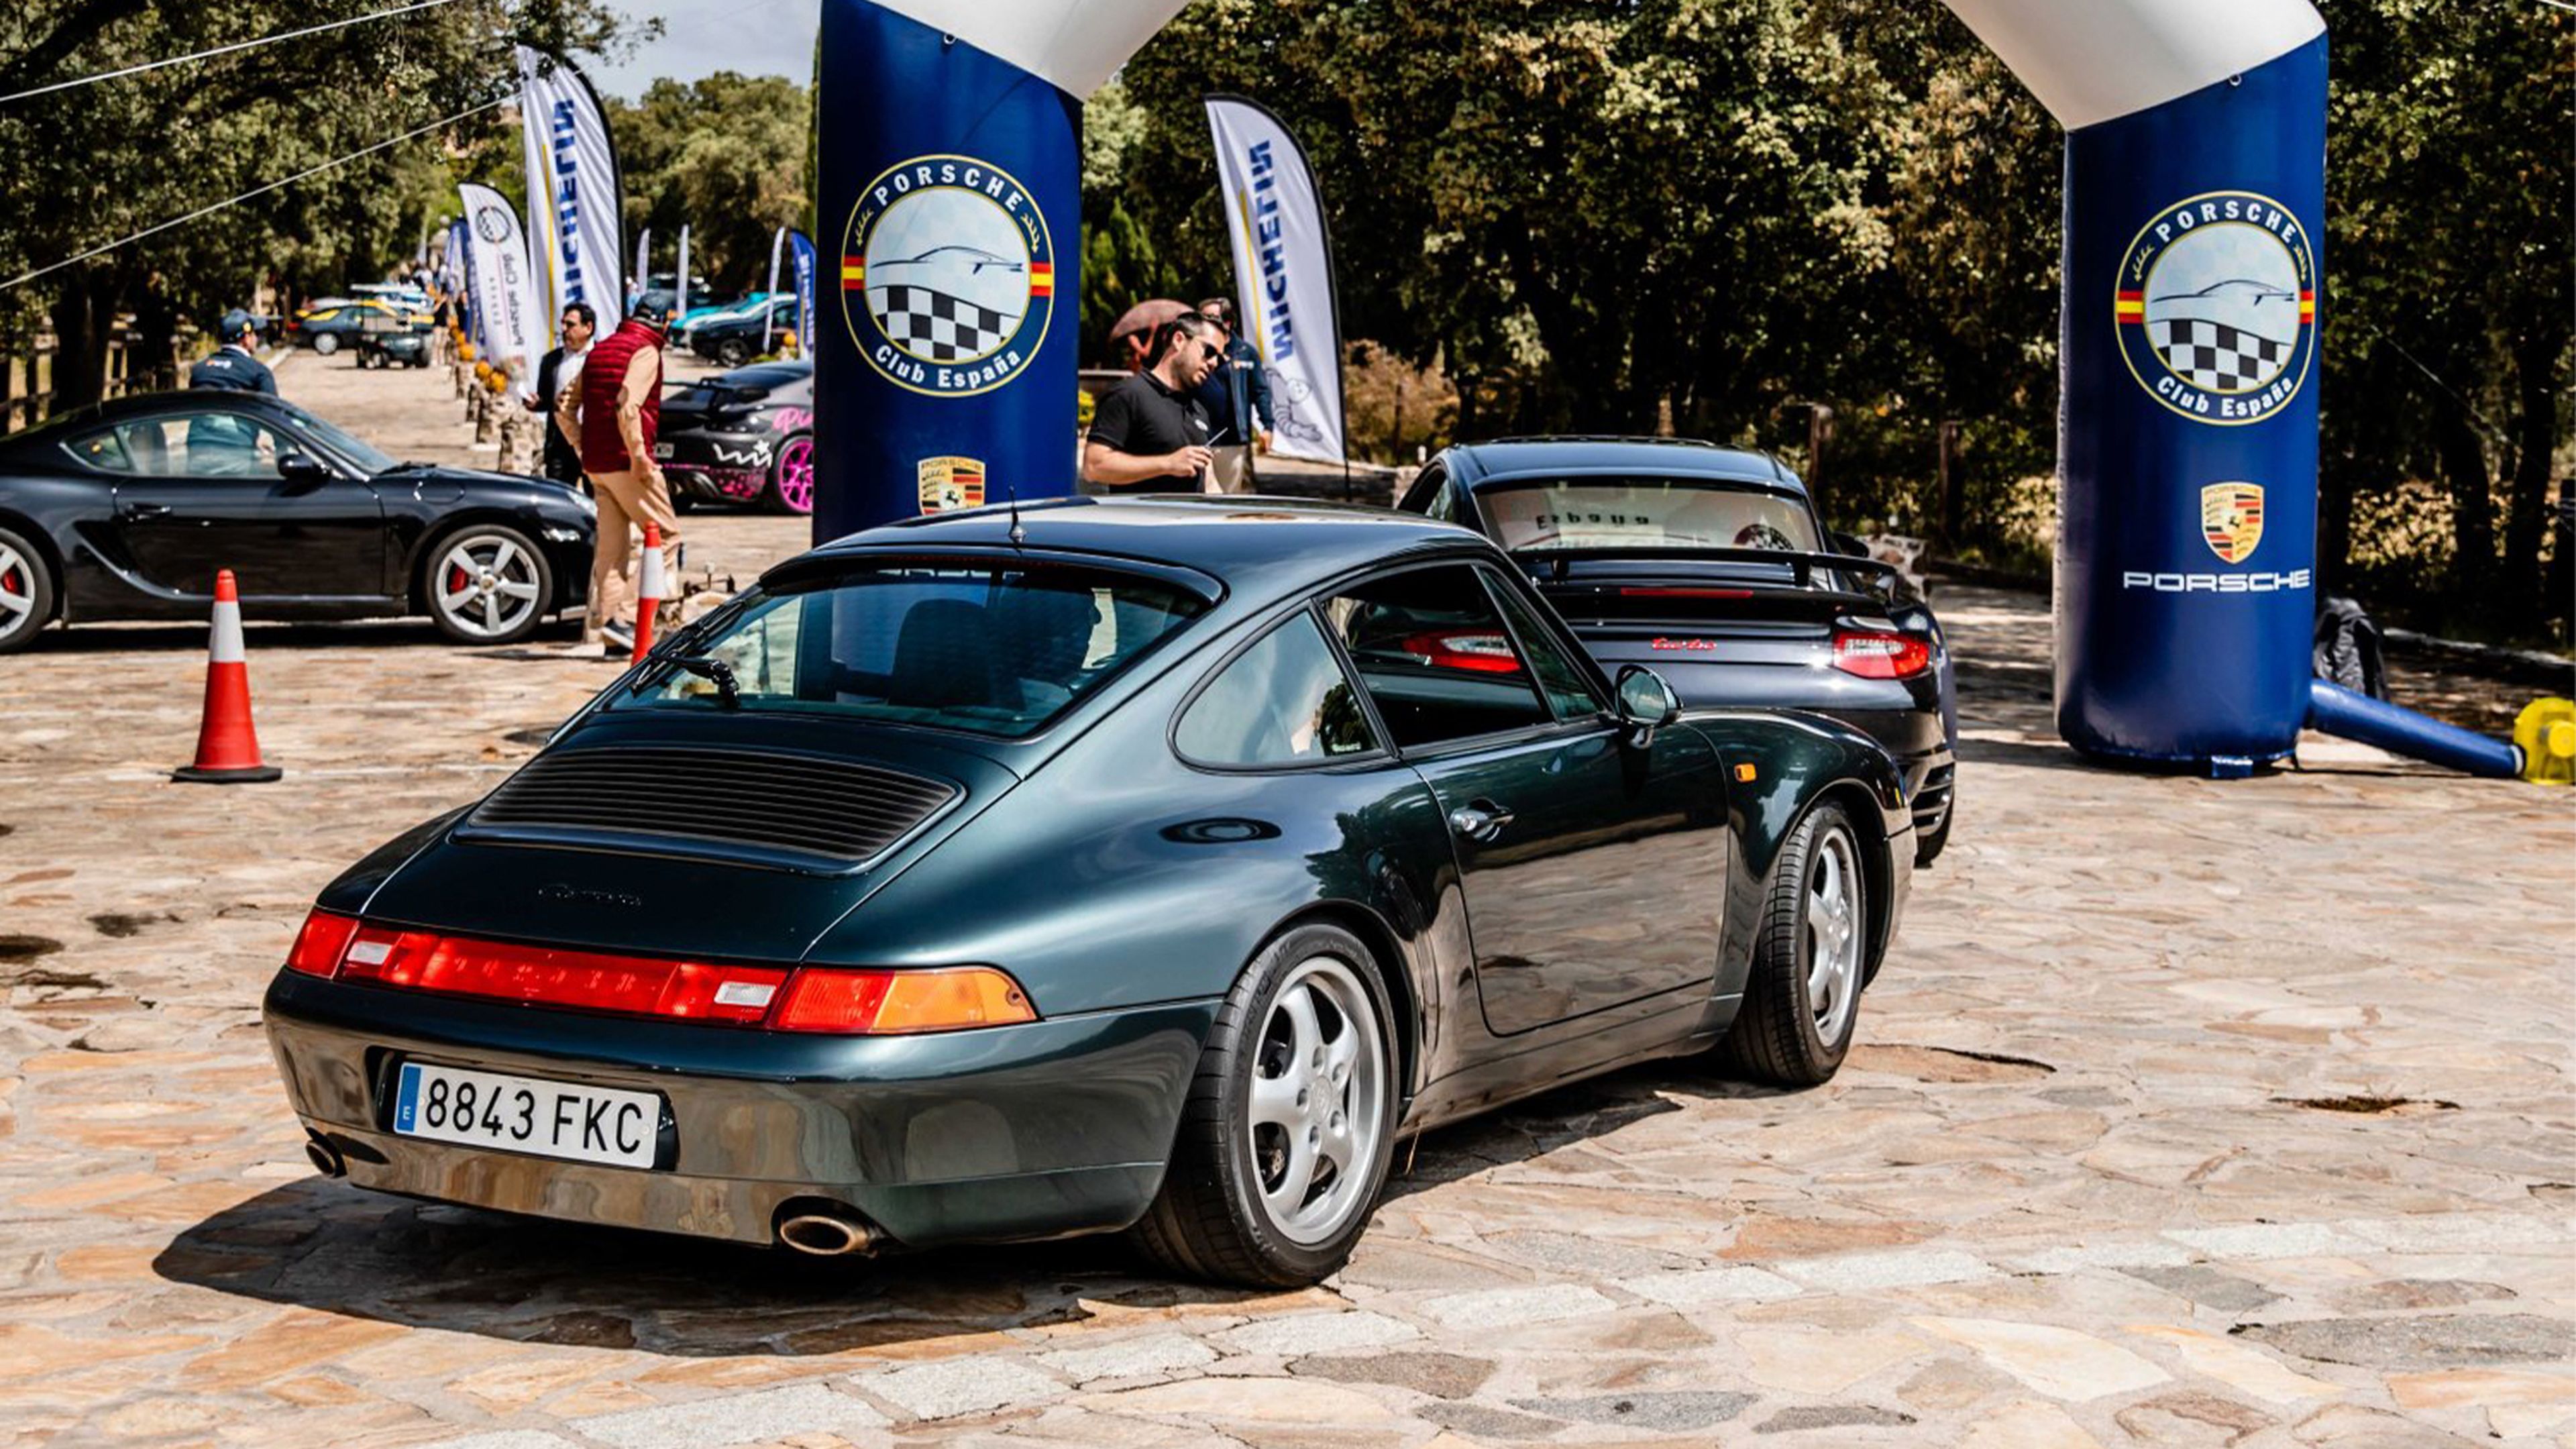 Porsche Club España